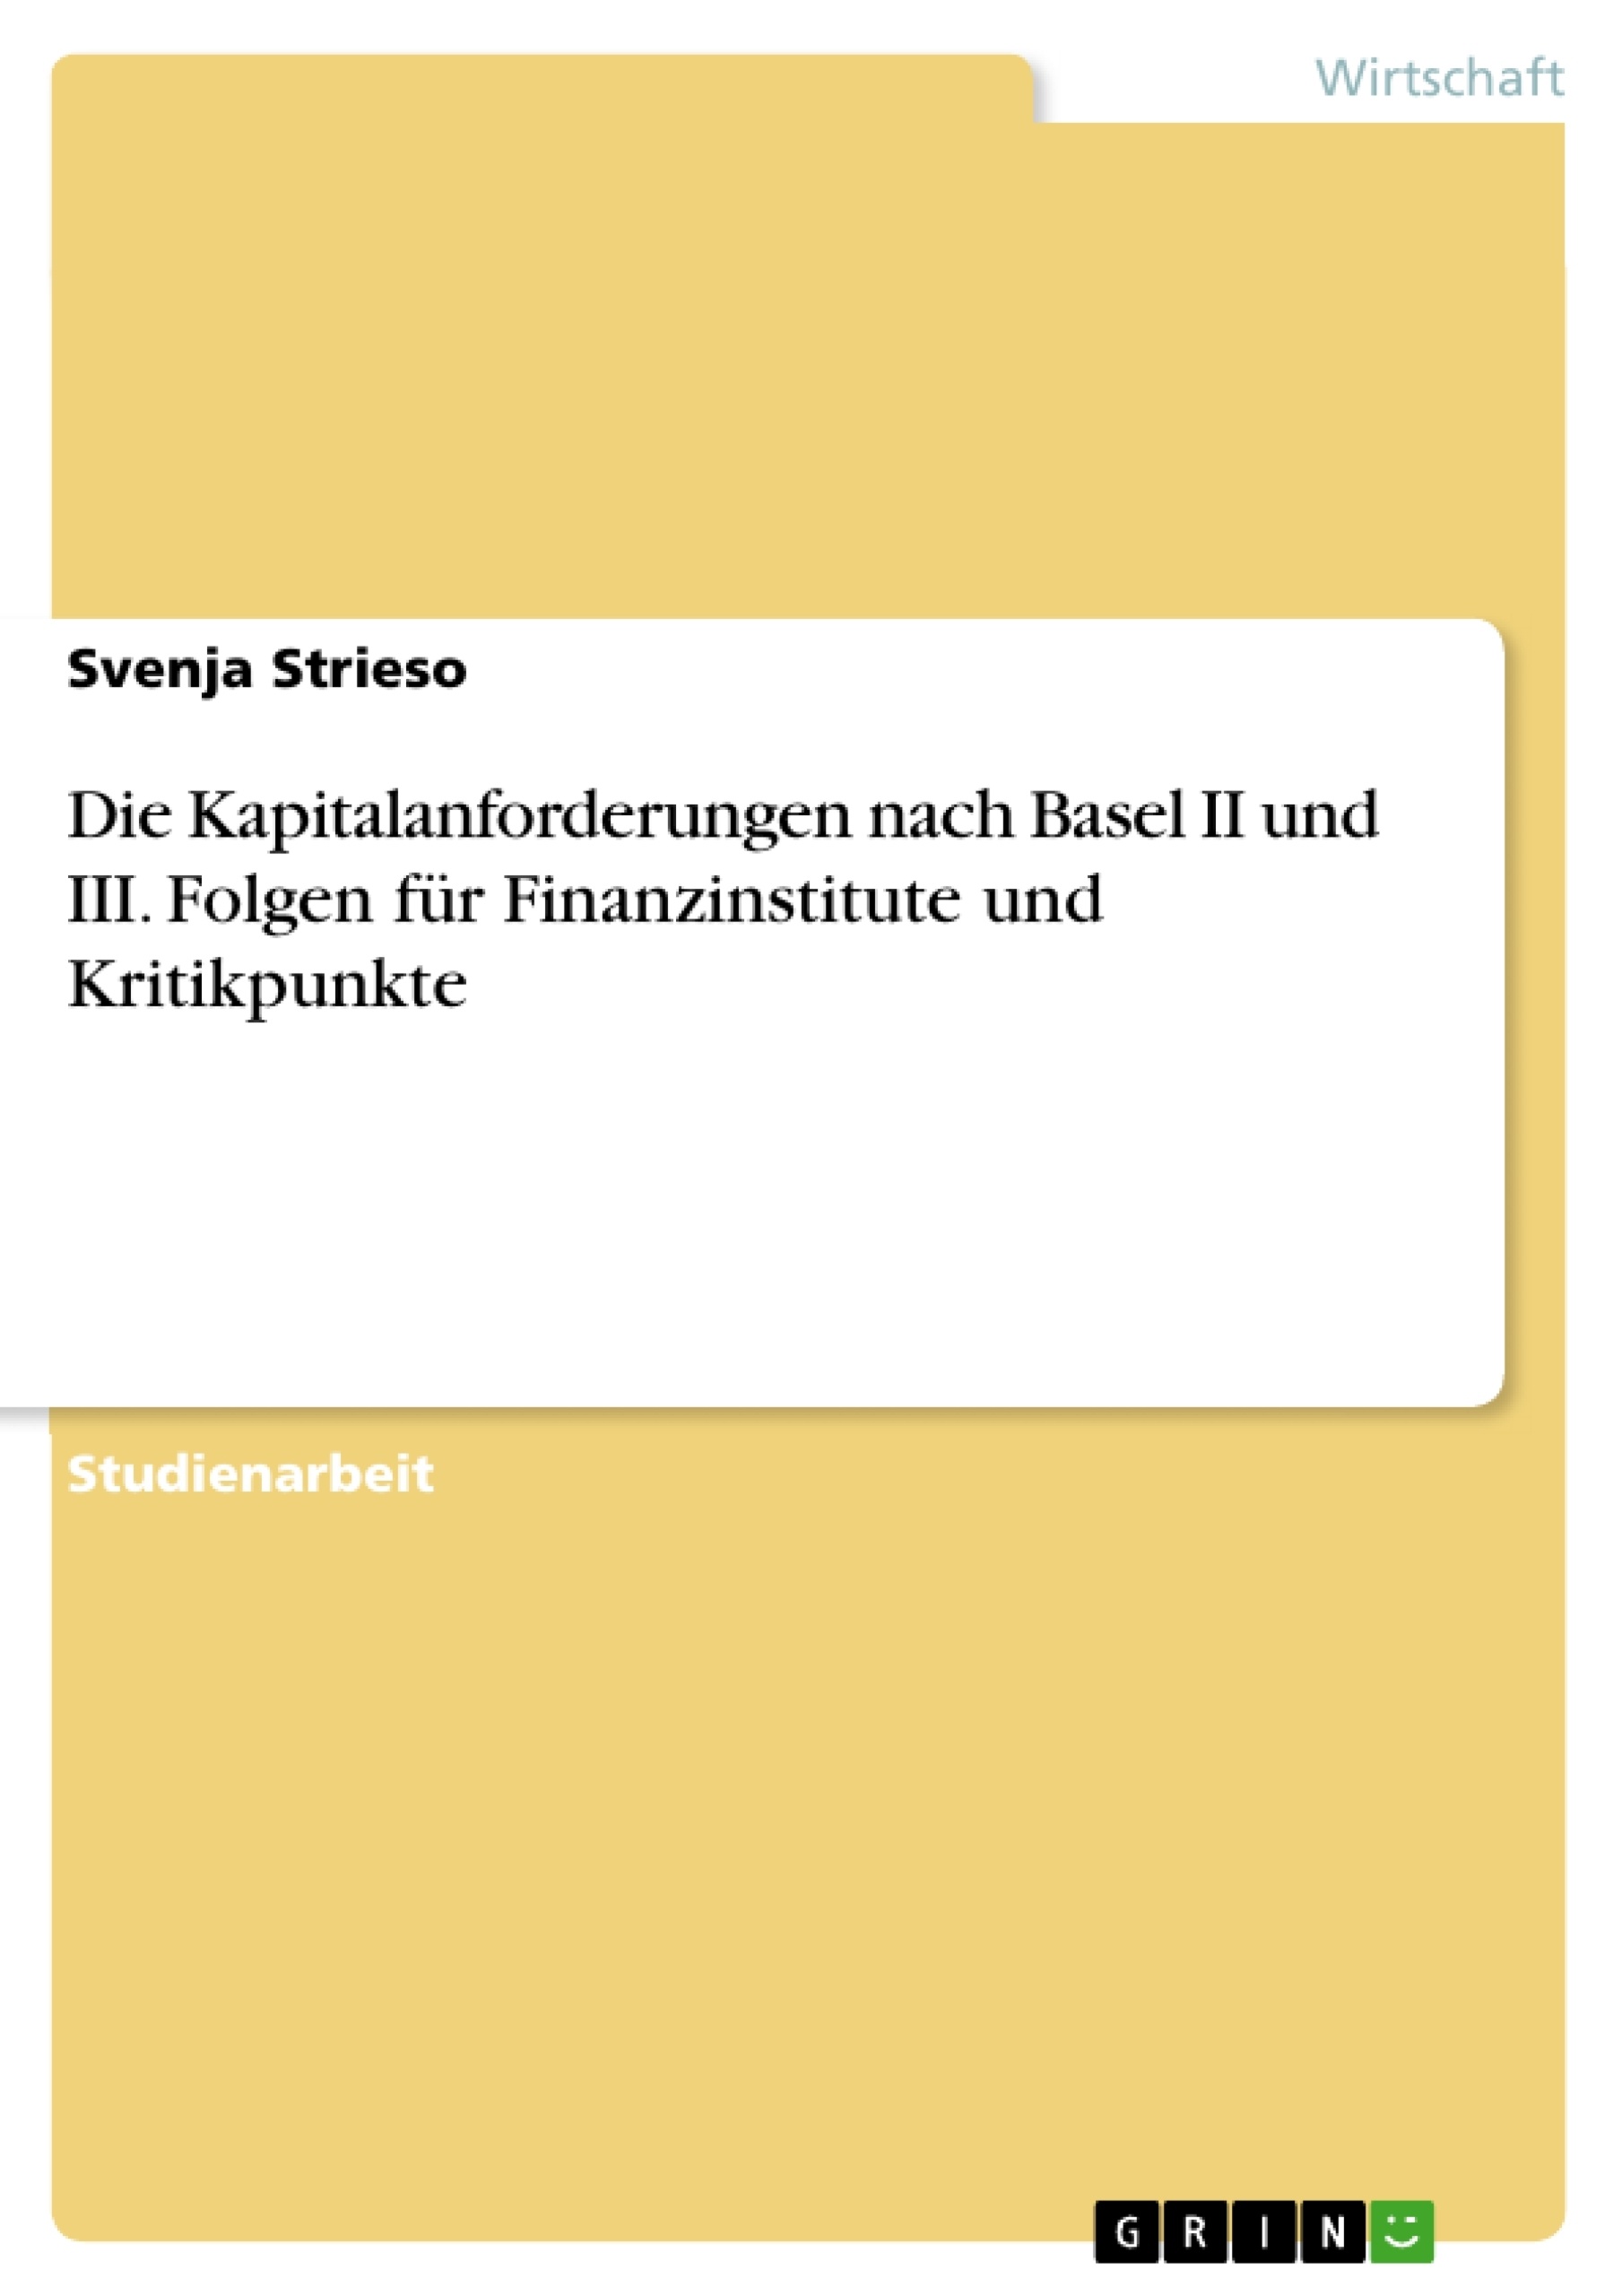 Title: Die Kapitalanforderungen nach Basel II und III. Folgen für Finanzinstitute und Kritikpunkte